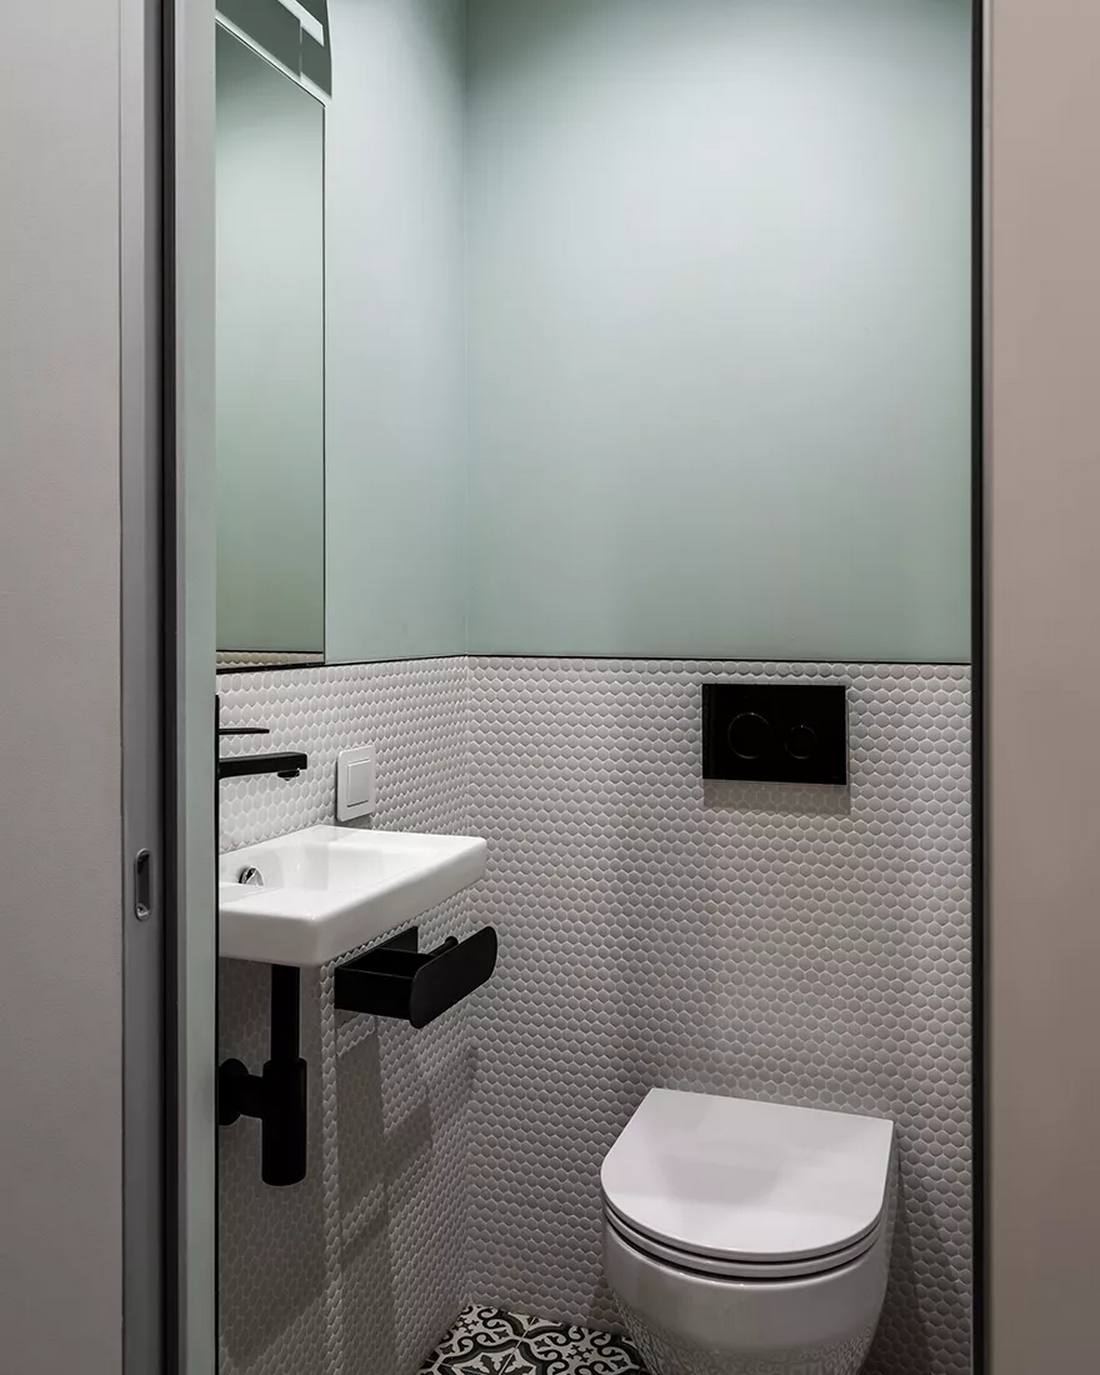 Phòng vệ sinh được trang trí với hiệu ứng bức tường 'chia đôi', phần trên được sơn màu xanh lam mịn mượt, phần dưới là những viên gạch penny hình tròn nhỏ nhắn. Hoa văn gạch lát sàn hoàn toàn tương đồng với hành lang.